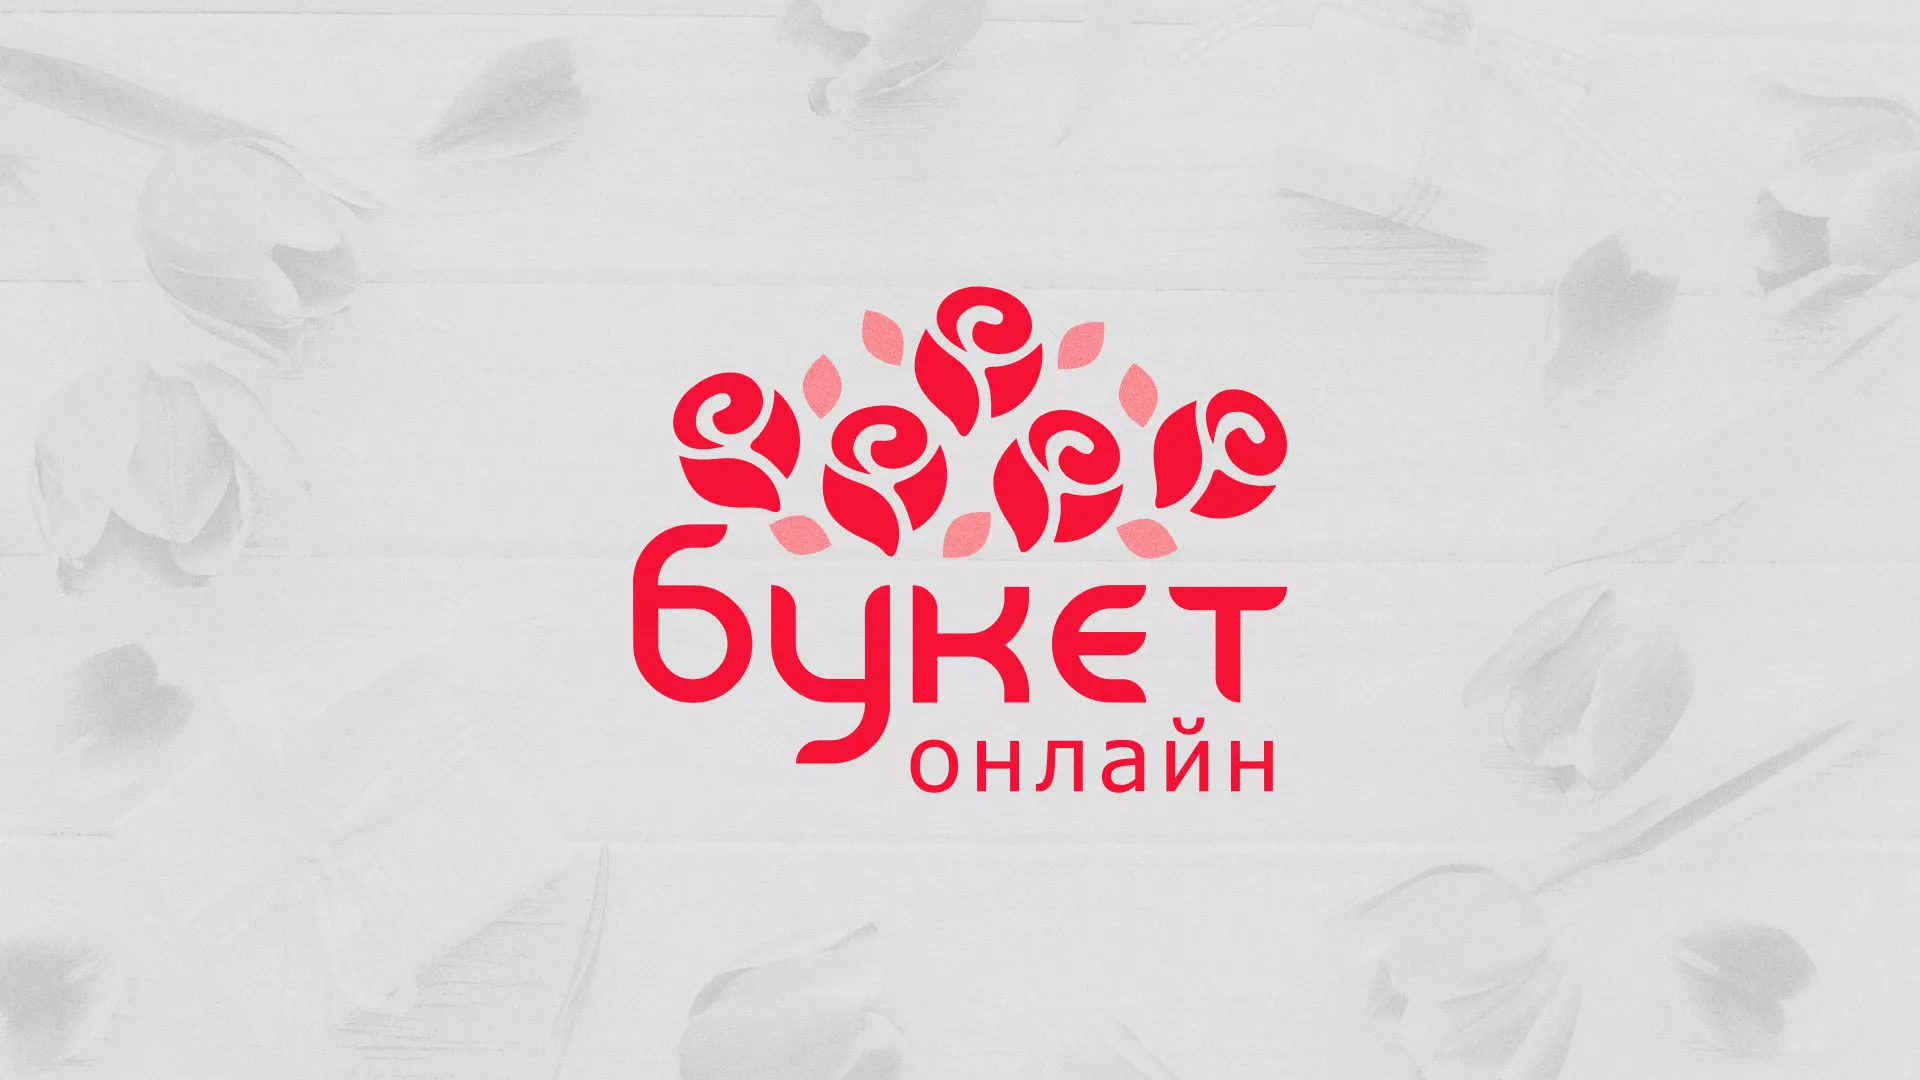 Создание интернет-магазина «Букет-онлайн» по цветам в Свердловском